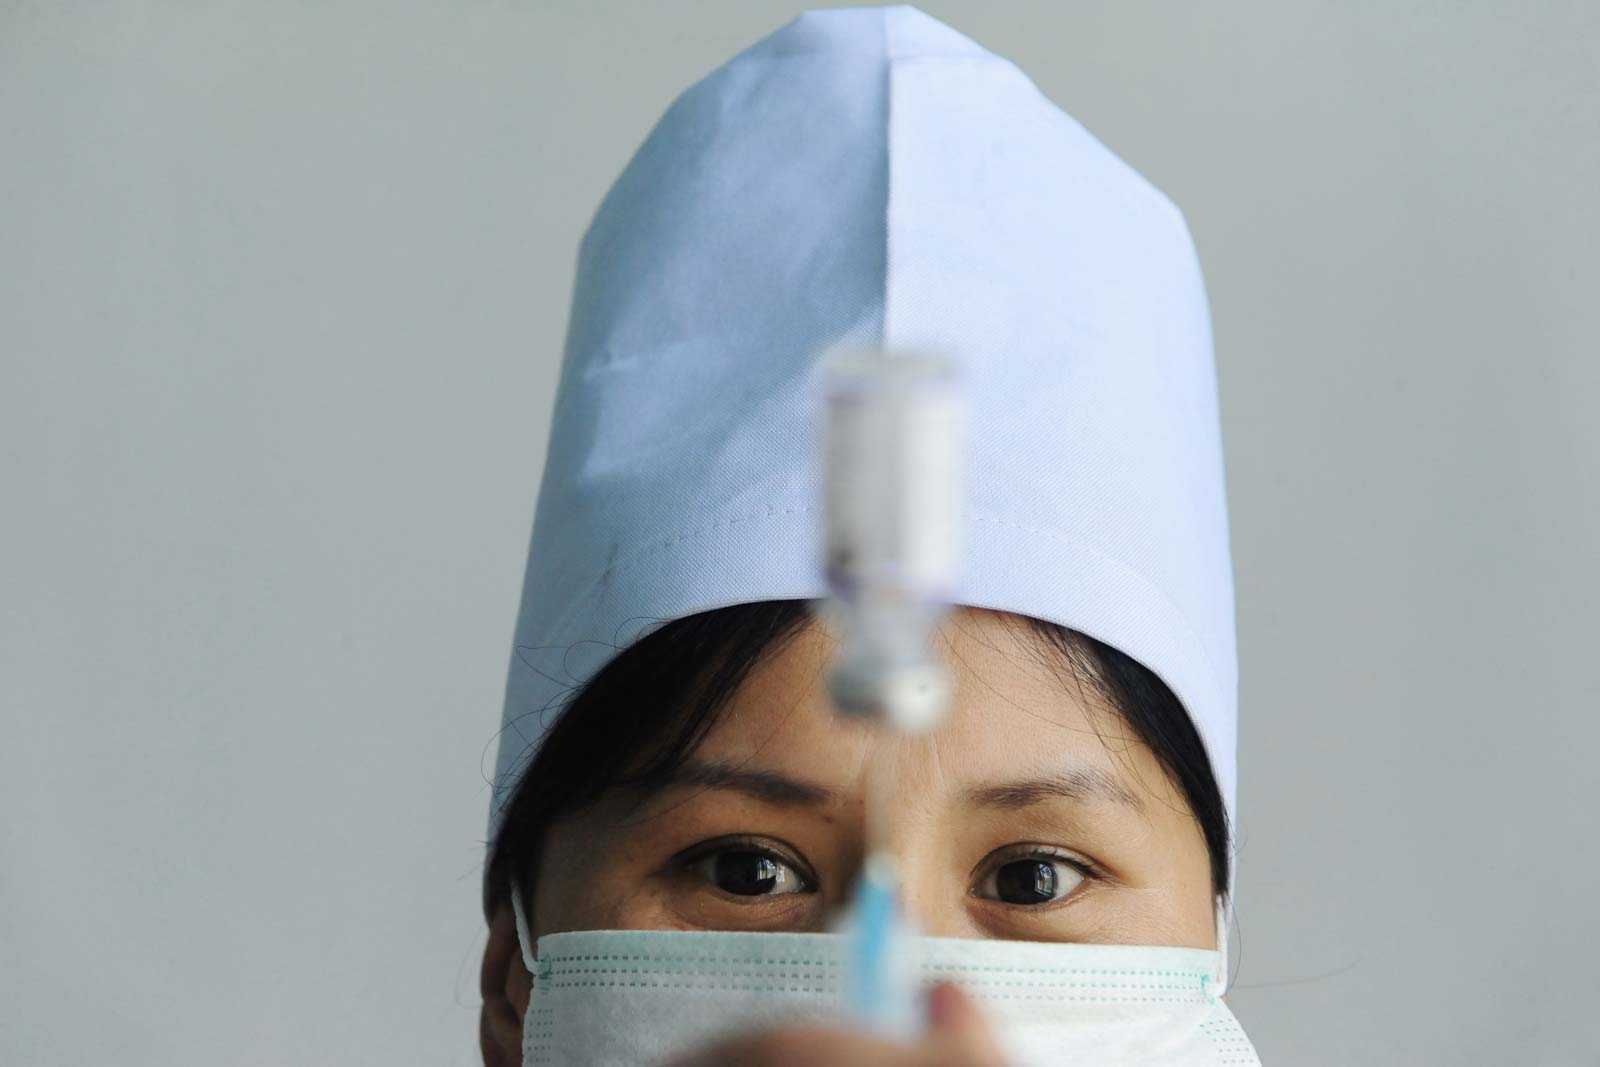   Le facteur géographique ne constitue pas le seul obstacle pour atteindre les enfants. De nombreux médecins et infirmières kirghizes sont attirés par des salaires plus élevés à l’étranger et la possibilité de travailler dans des établissements plus modernes.